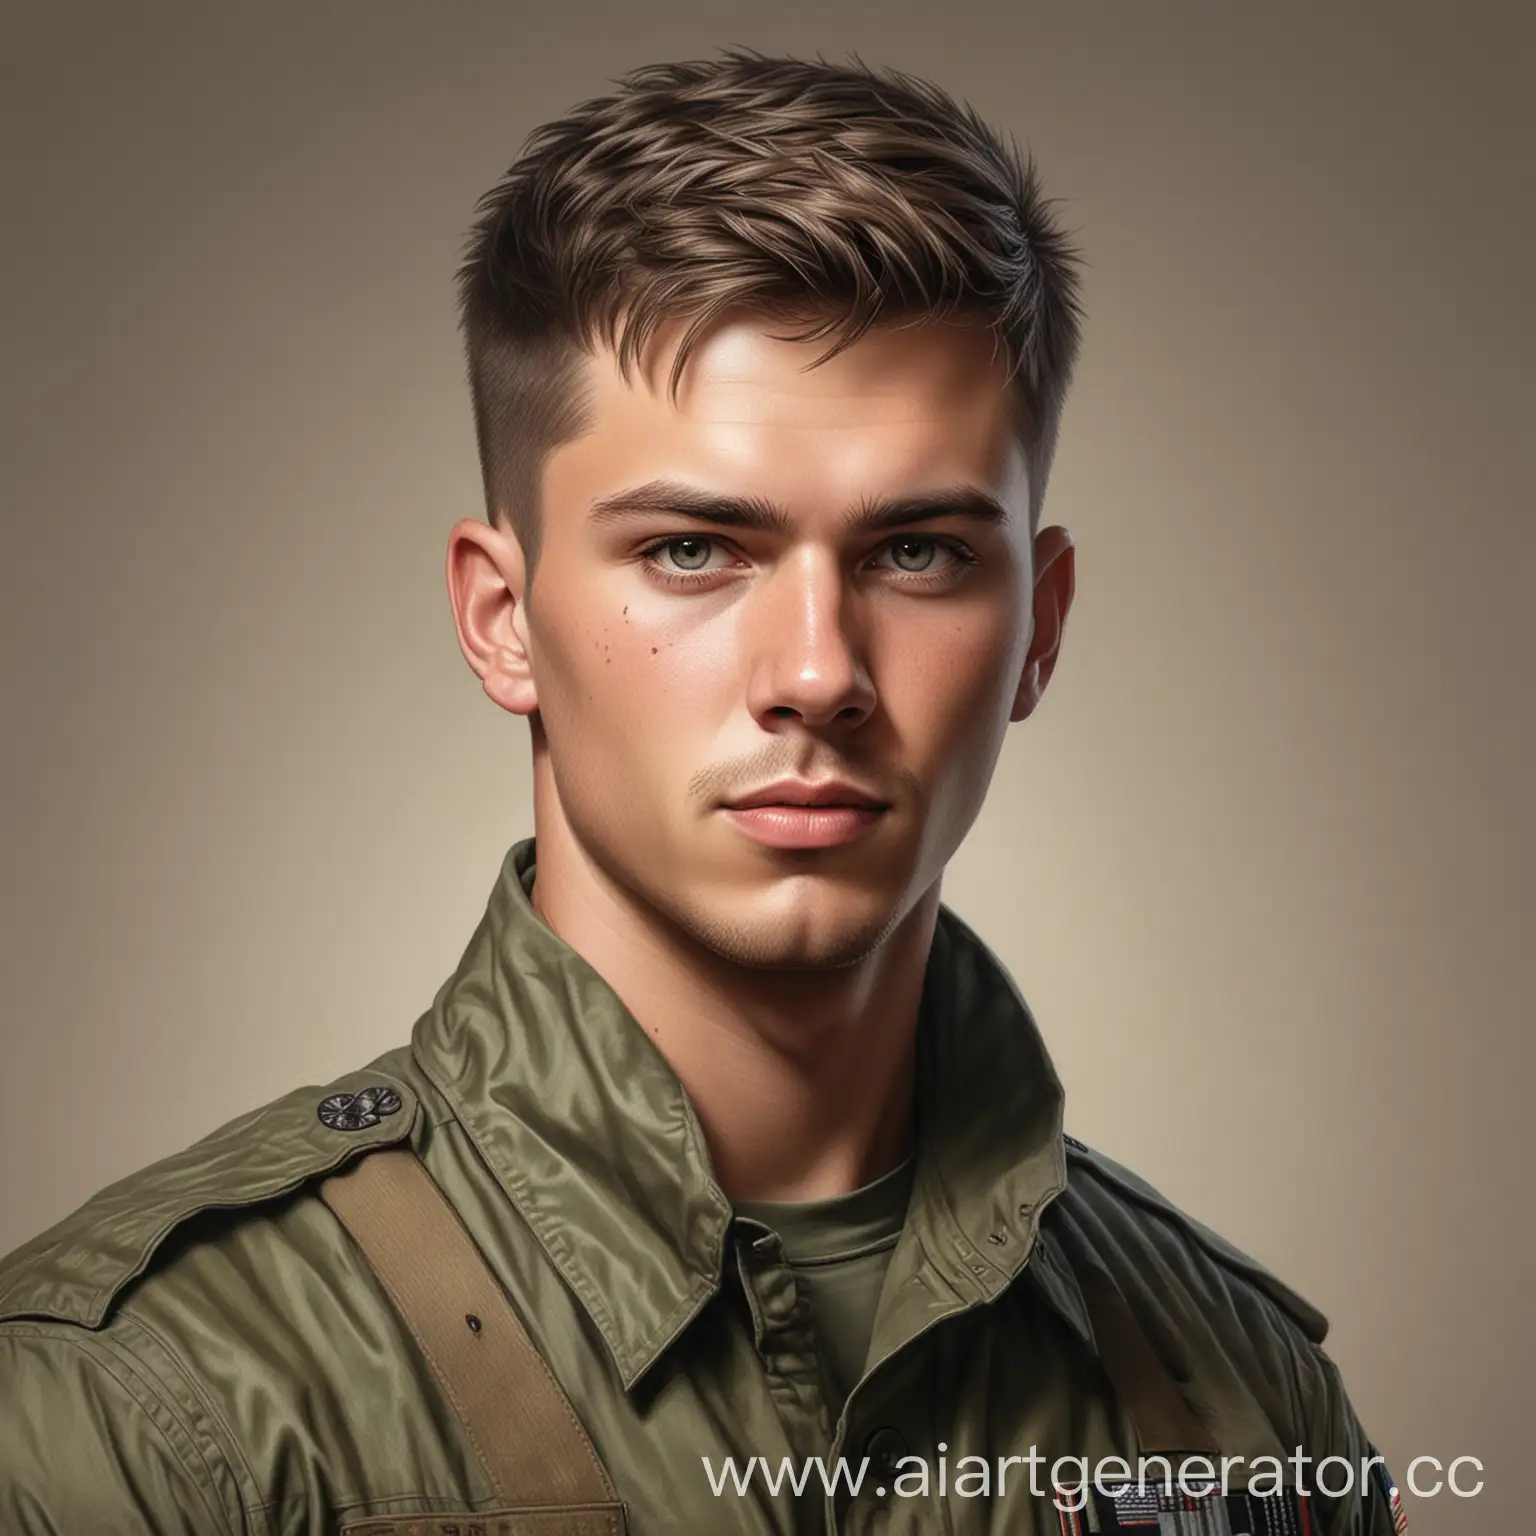 Рисунок в реализме, парень в военной форме, коротко подстрижен, подкаченый, в армейском желете, 